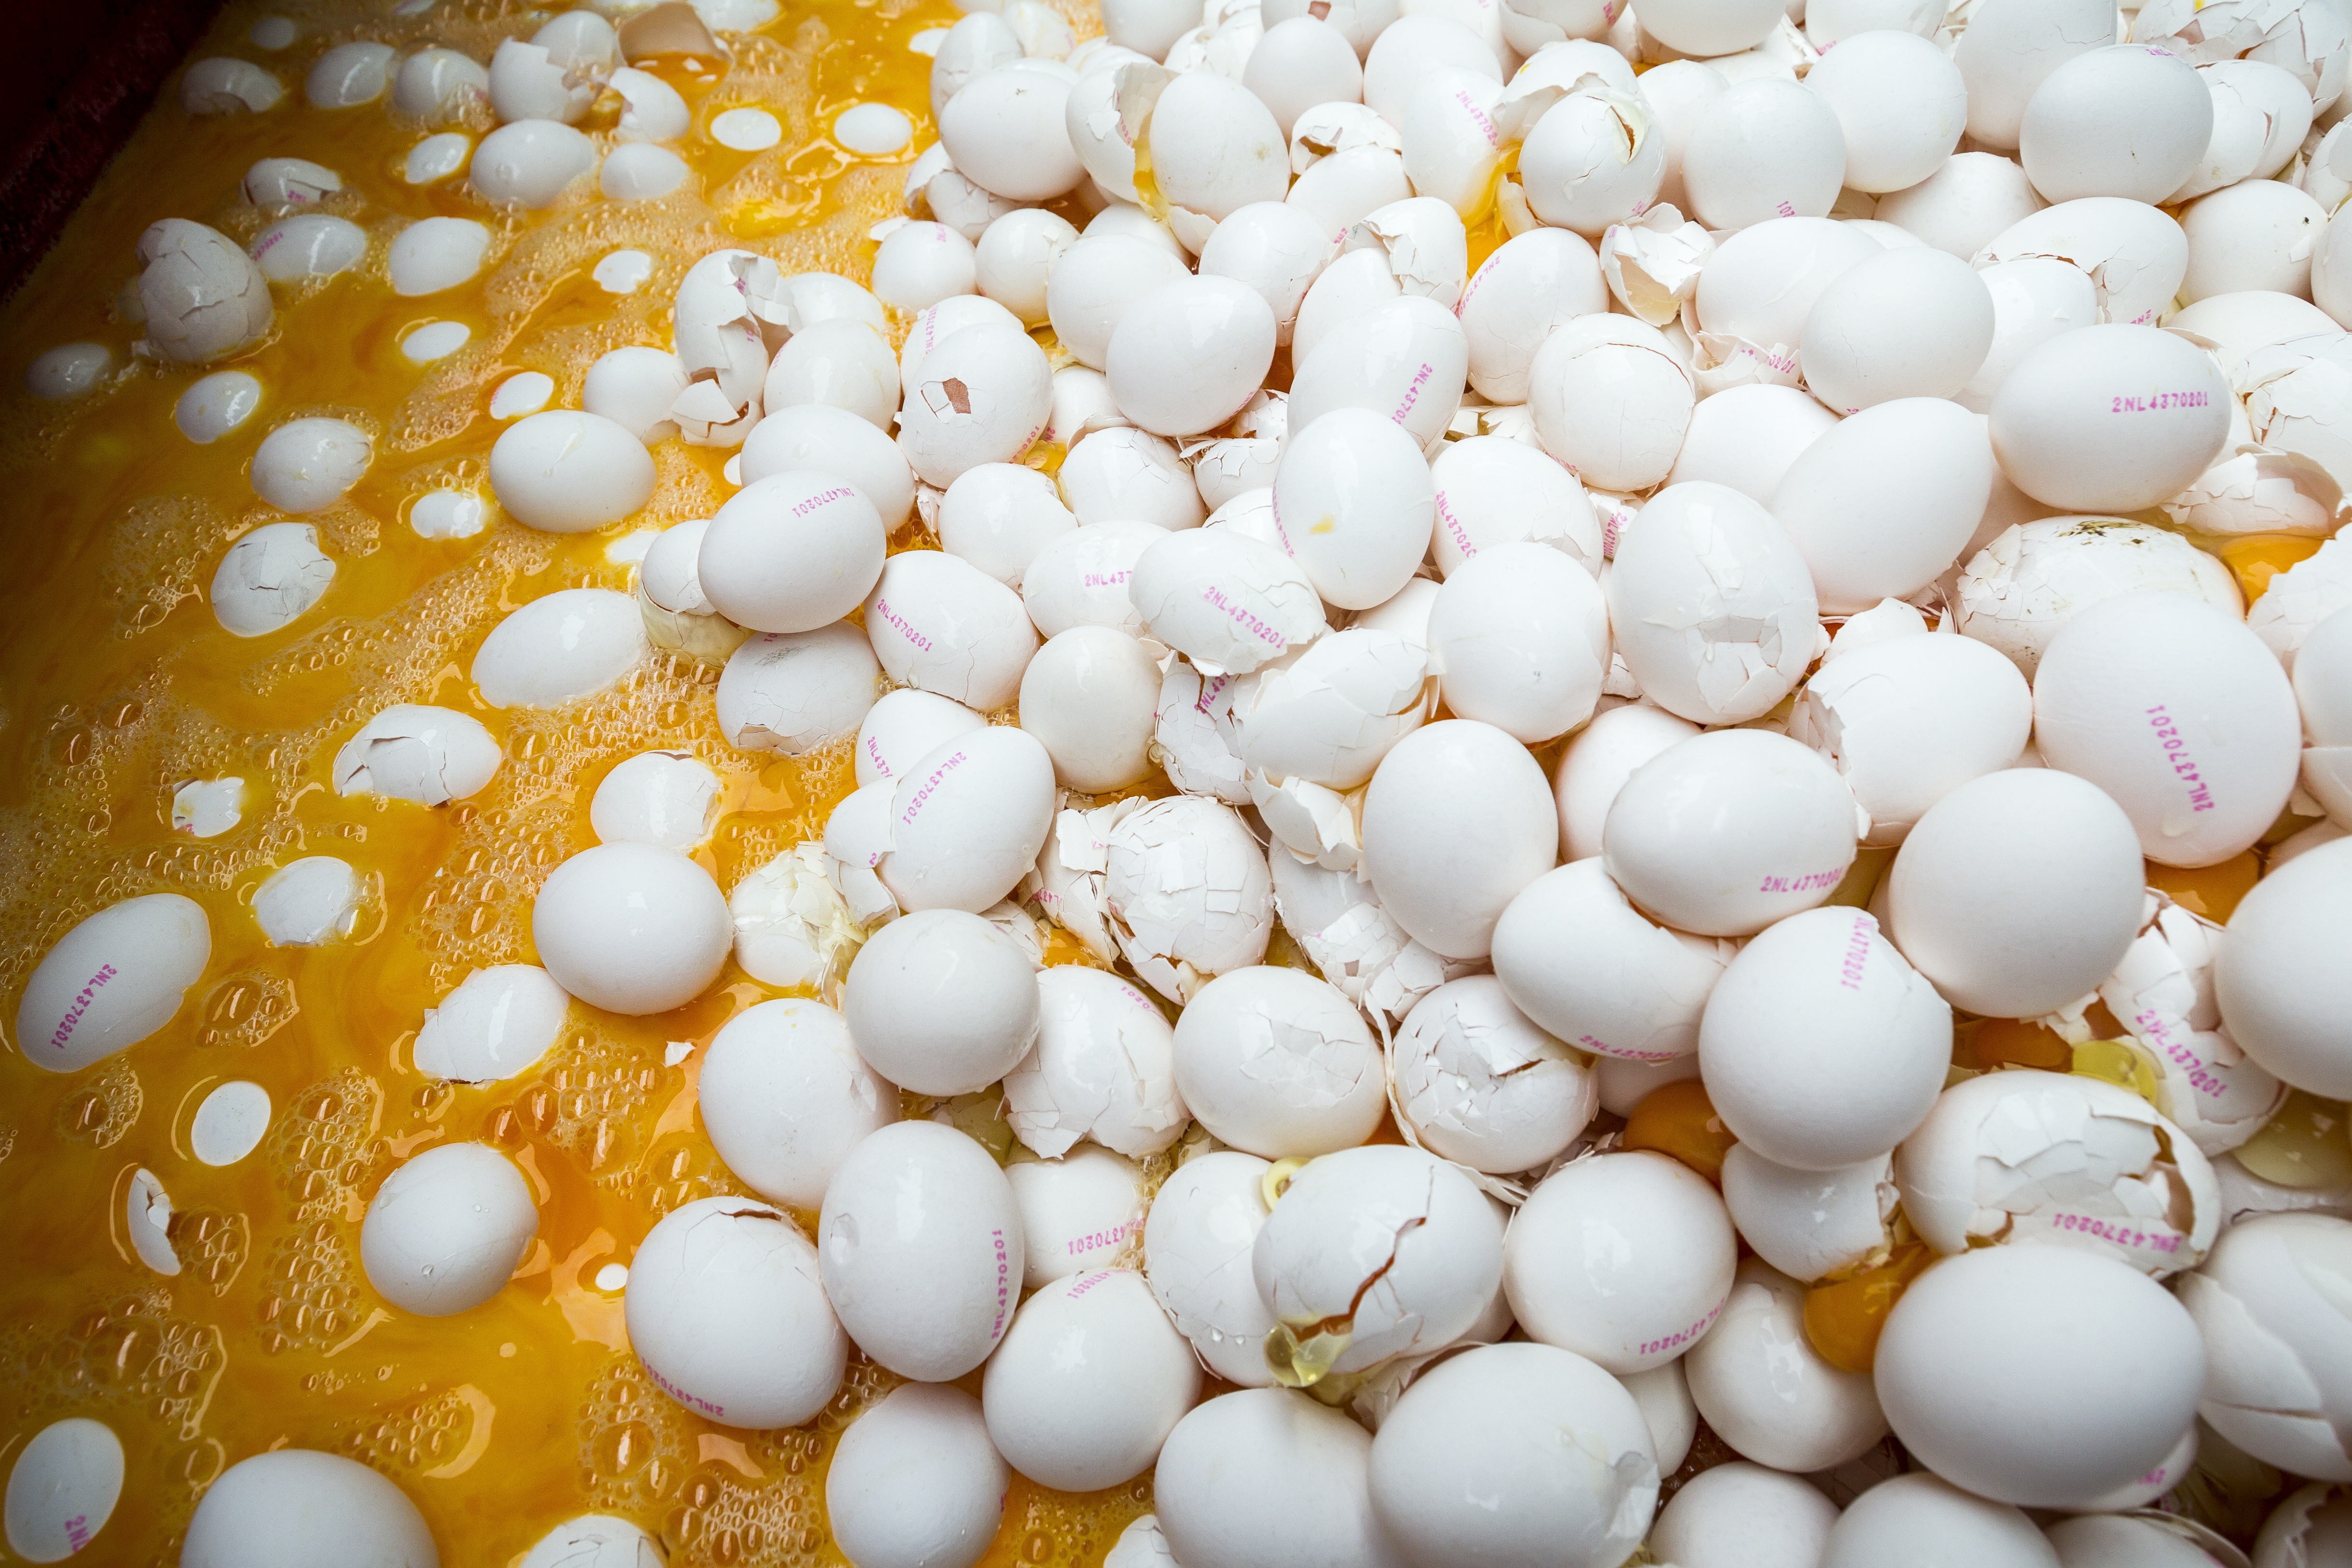 2017-08-02 14:51:16 ONSTWEDDE - Eieren worden op last van de Nederlandse Voedsel- en Warenautoriteit (NVWA) vernietigd bij een pluimveehouder. ANP PATRICK HUISMAN